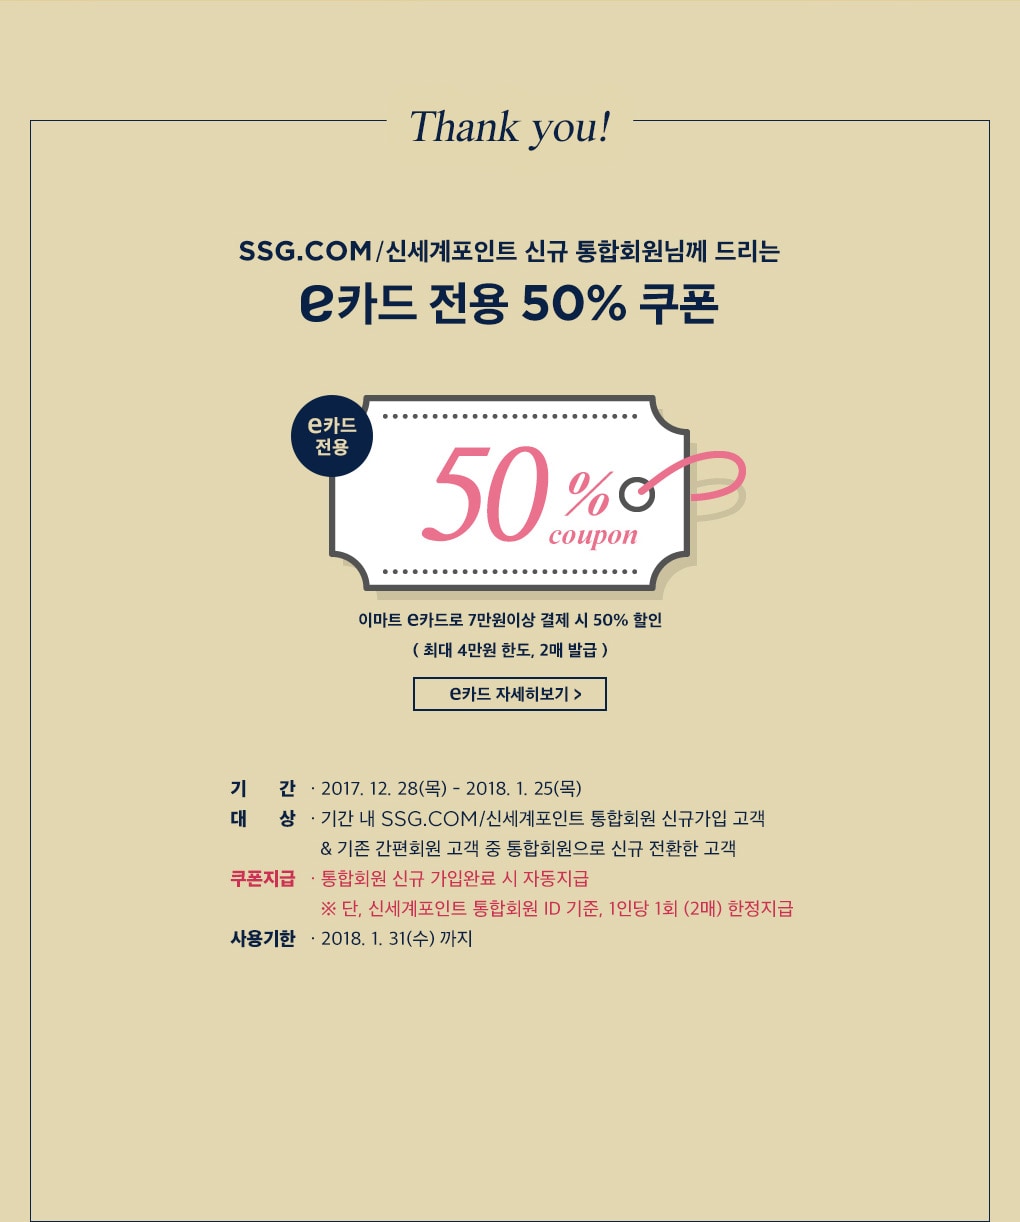 Thank you! SSG.COM/신세계포인트 신규 통합회원님께 드리는 e카드 전용 50% 할인쿠폰